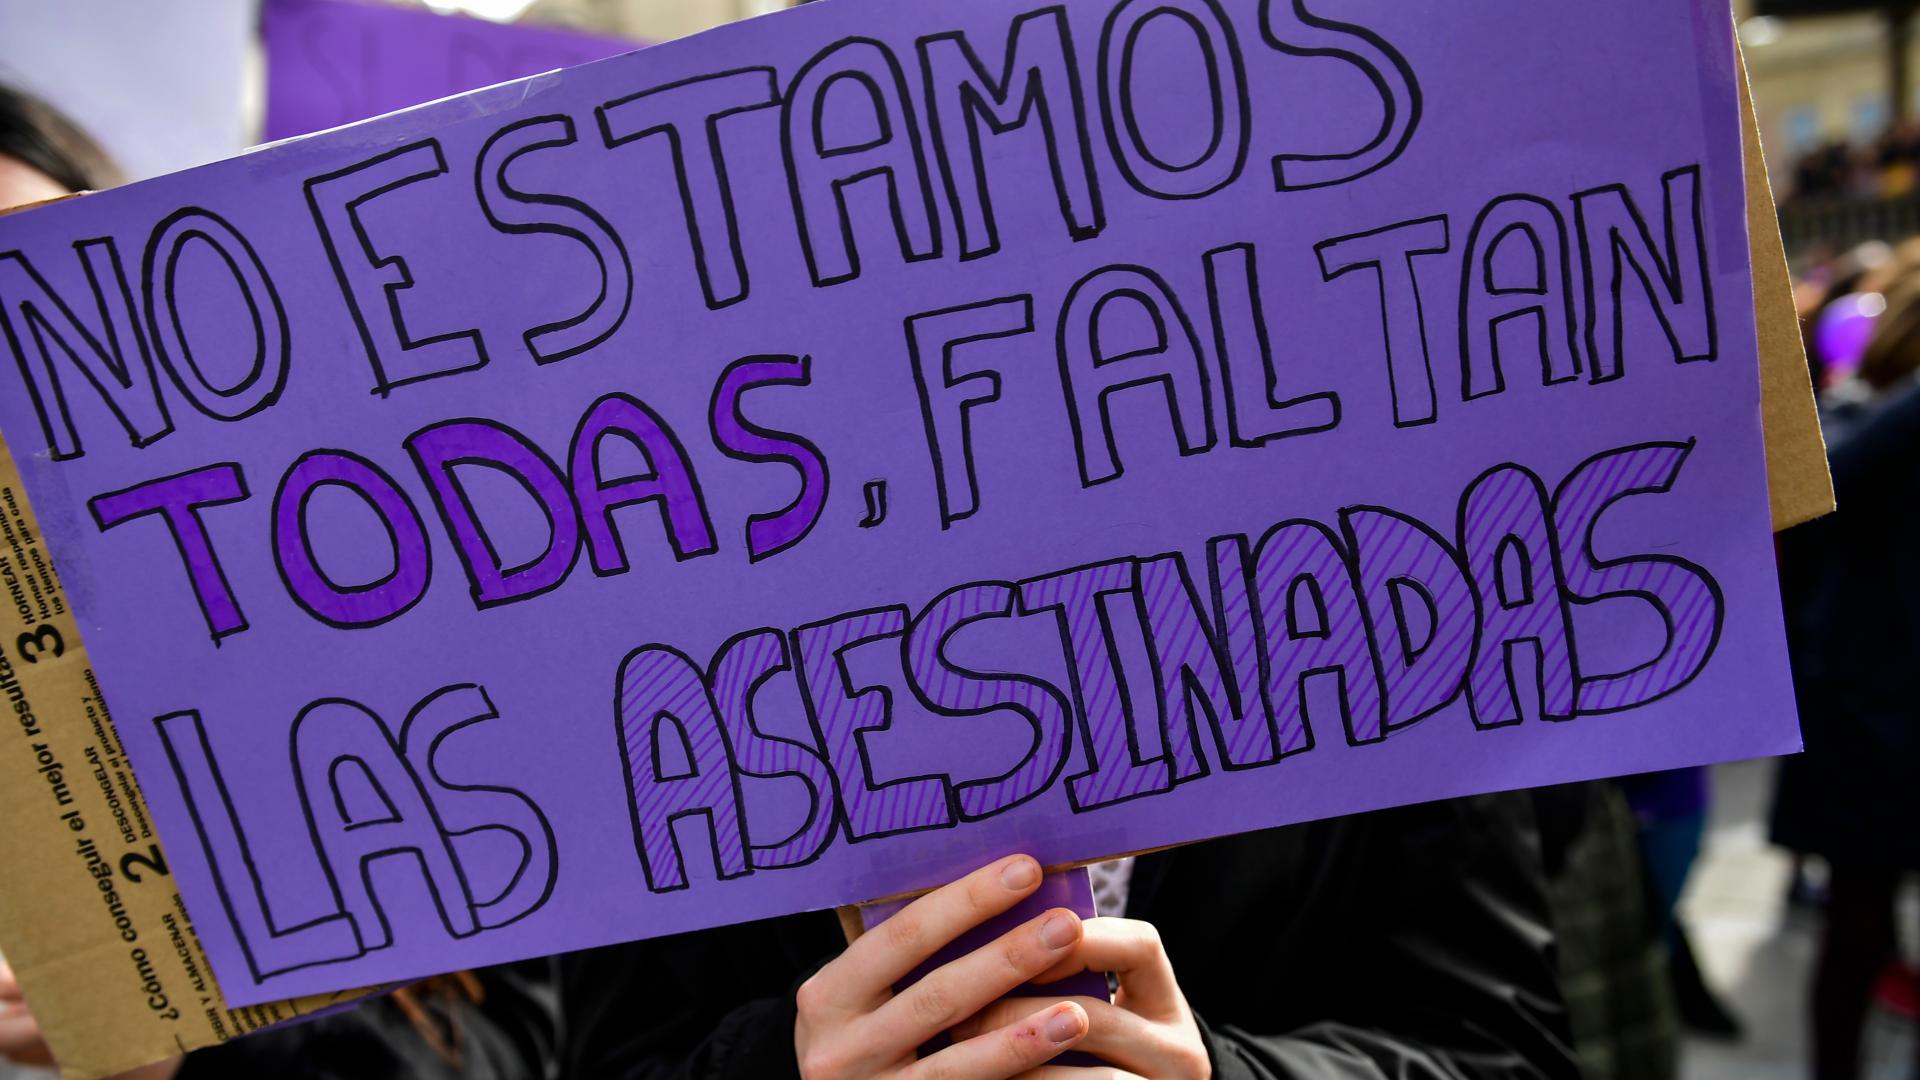 #Noestásola, una campaña de Madrid contra el maltrato ante un posible repunte